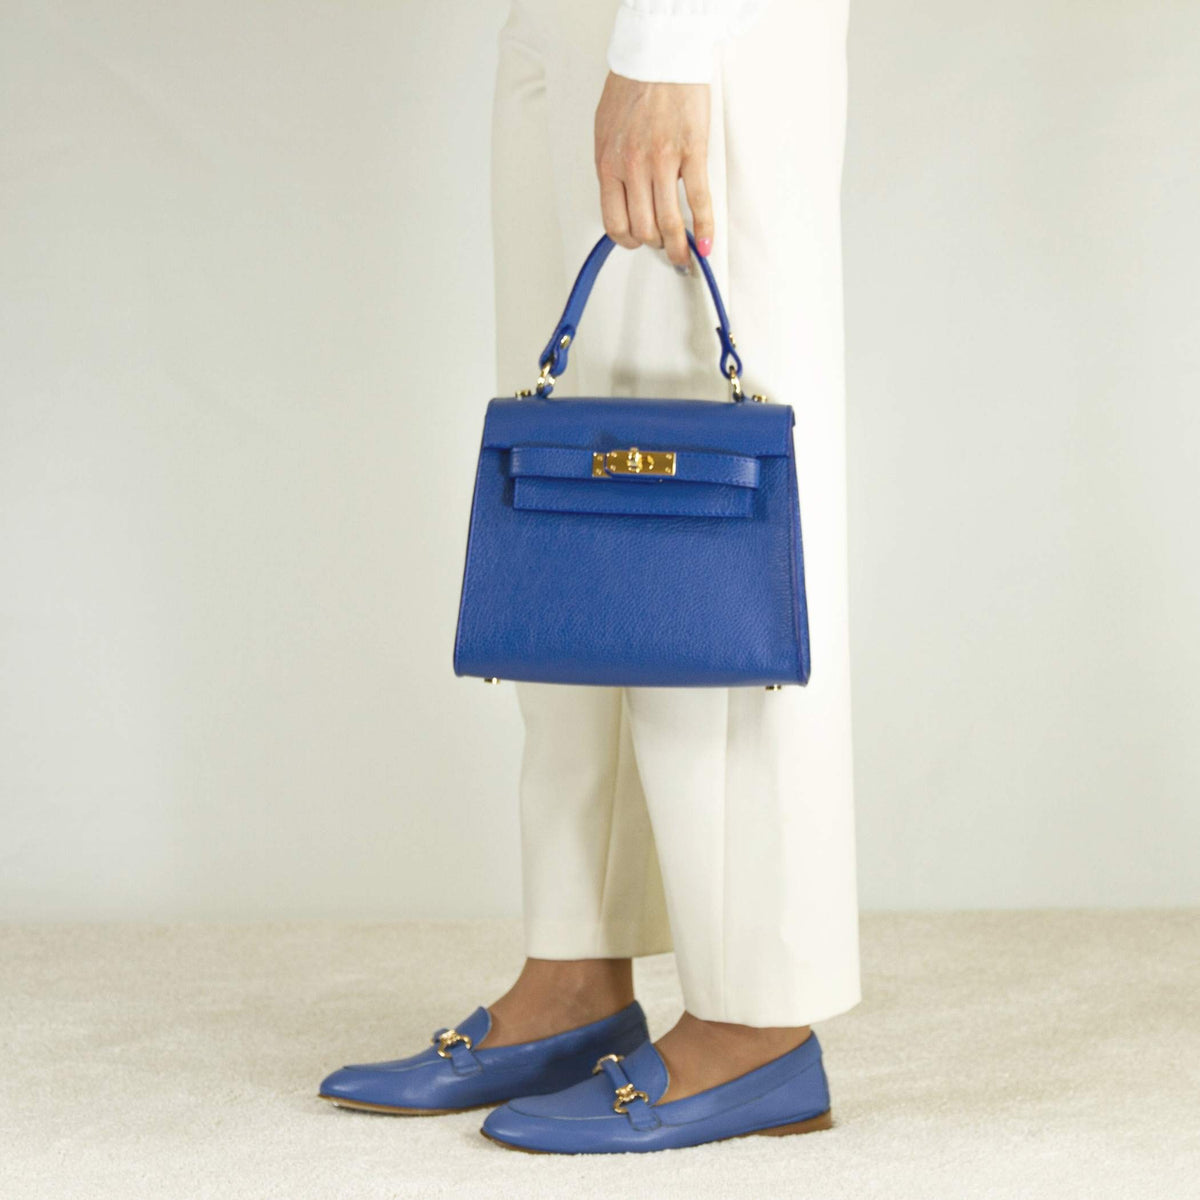 Lady K women's handbag in blue leather